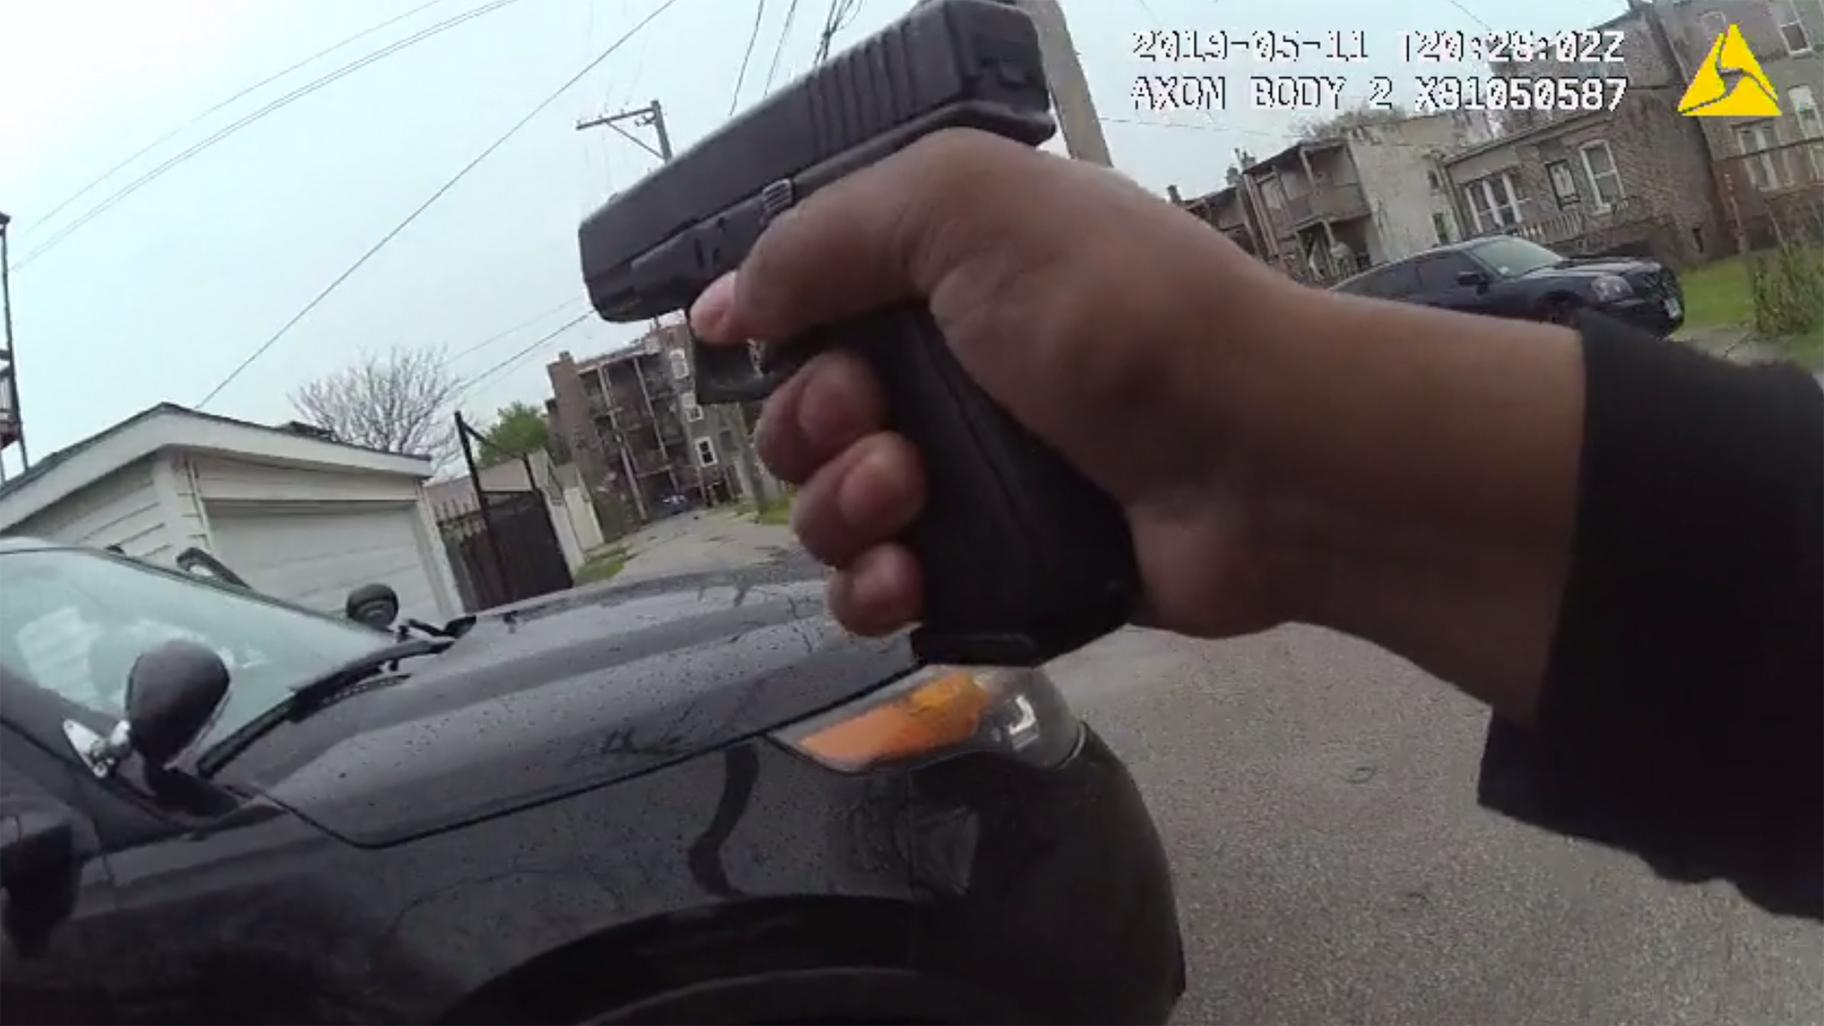 Záběry z tělesné kamery ukazují, co vedlo k smrtelnému zastřelení 26leté Sharell Brown chicagskými policisty. (Civilní úřad pro odpovědnost policie)